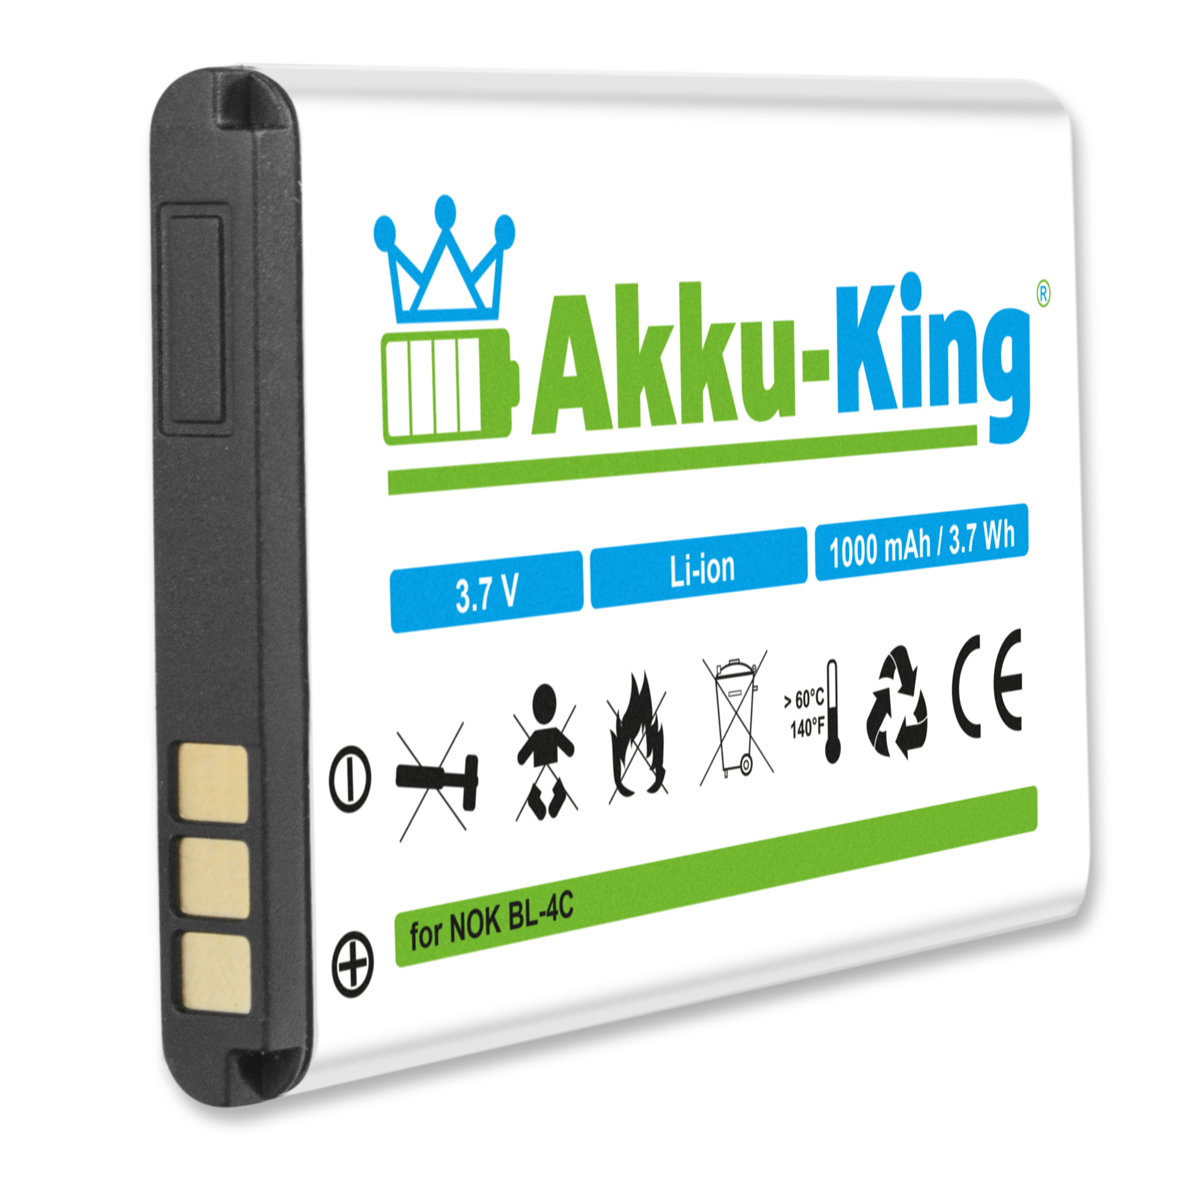 Handy-Akku, 3.7 1000mAh Doro mit Volt, Akku AKKU-KING XYP1110007704 kompatibel Li-Ion